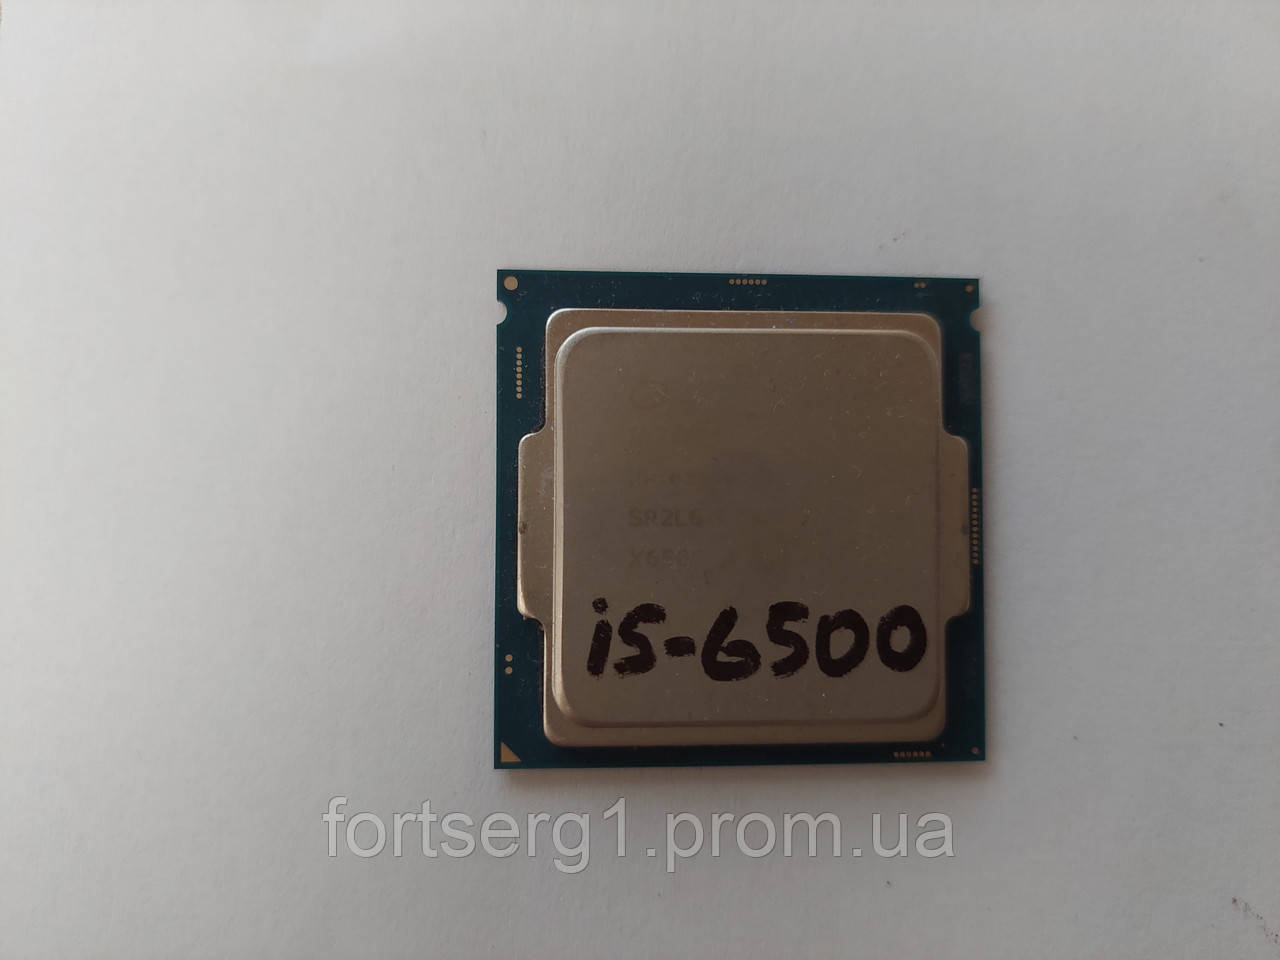 Купить Процессор Intel Core i5-6500 3.2 GHz/6M (s1151)Б/У, цена 2400 ₴ —  (ID#1617106488)